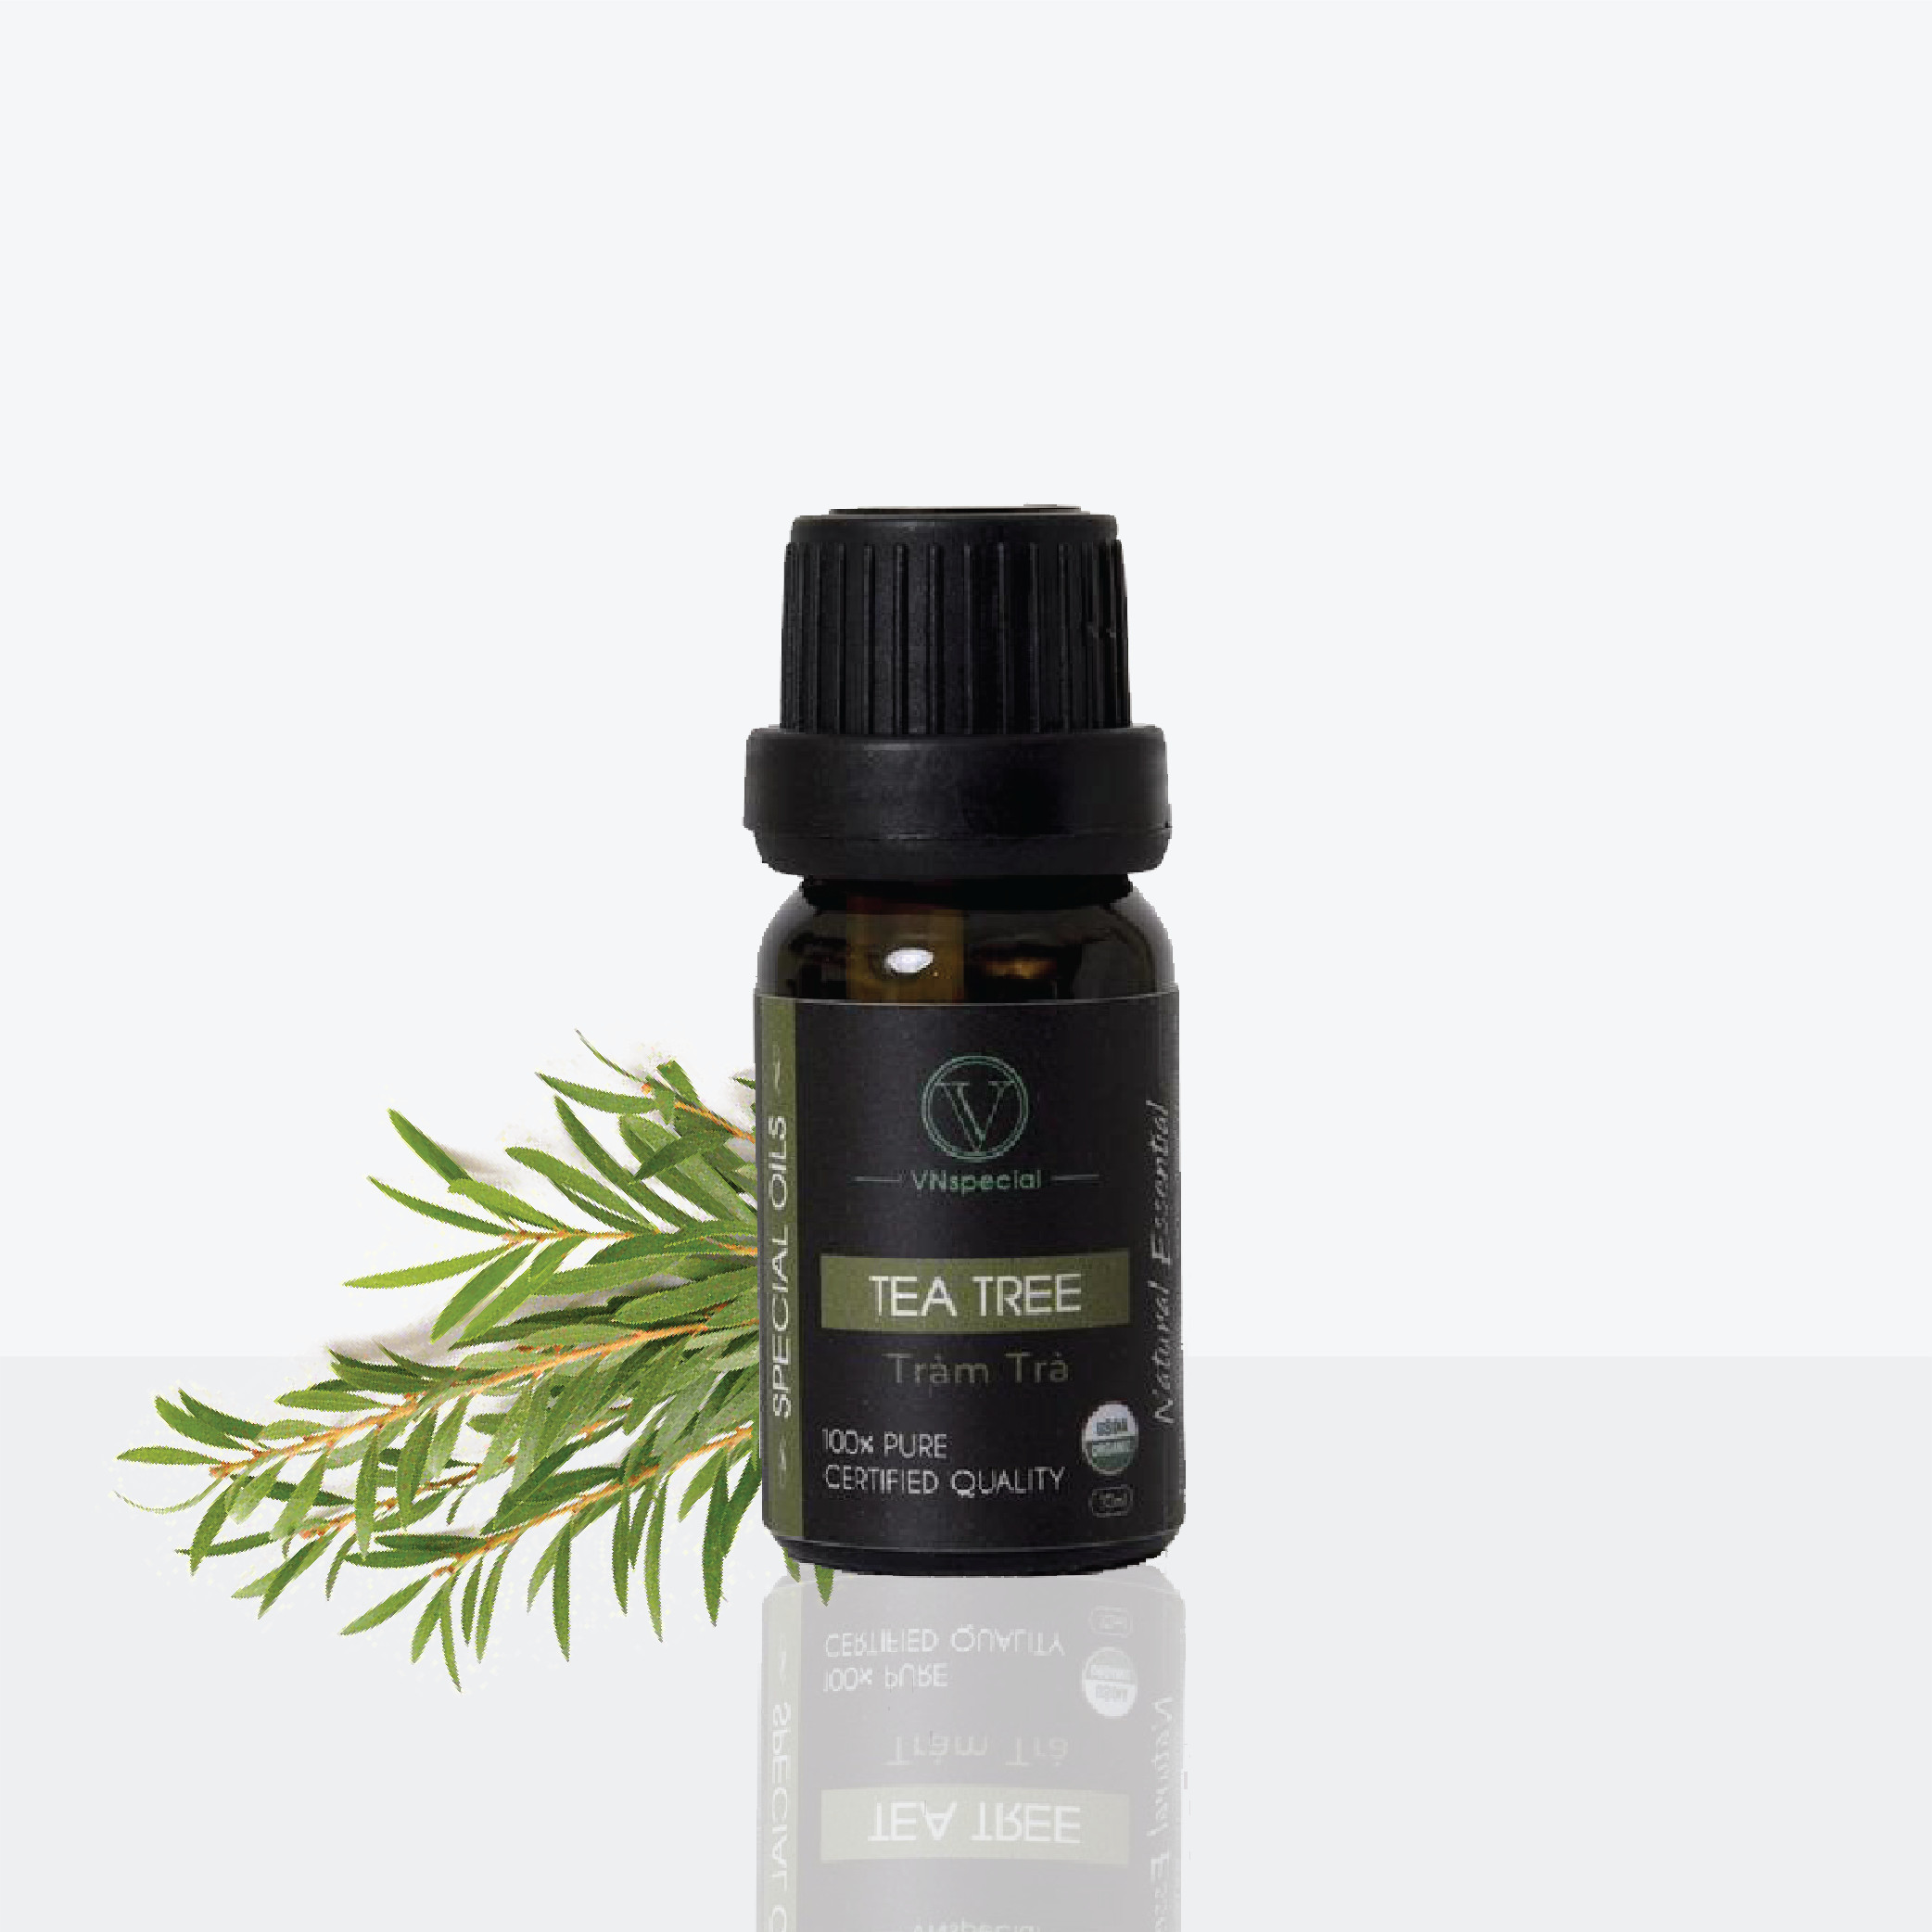 Tinh Dầu Hữu Cơ Tràm Trà | Organic Tea Tree Oil | Tinh dầu Nhập Khẩu USDA- Vnspecial Oils (10ml)